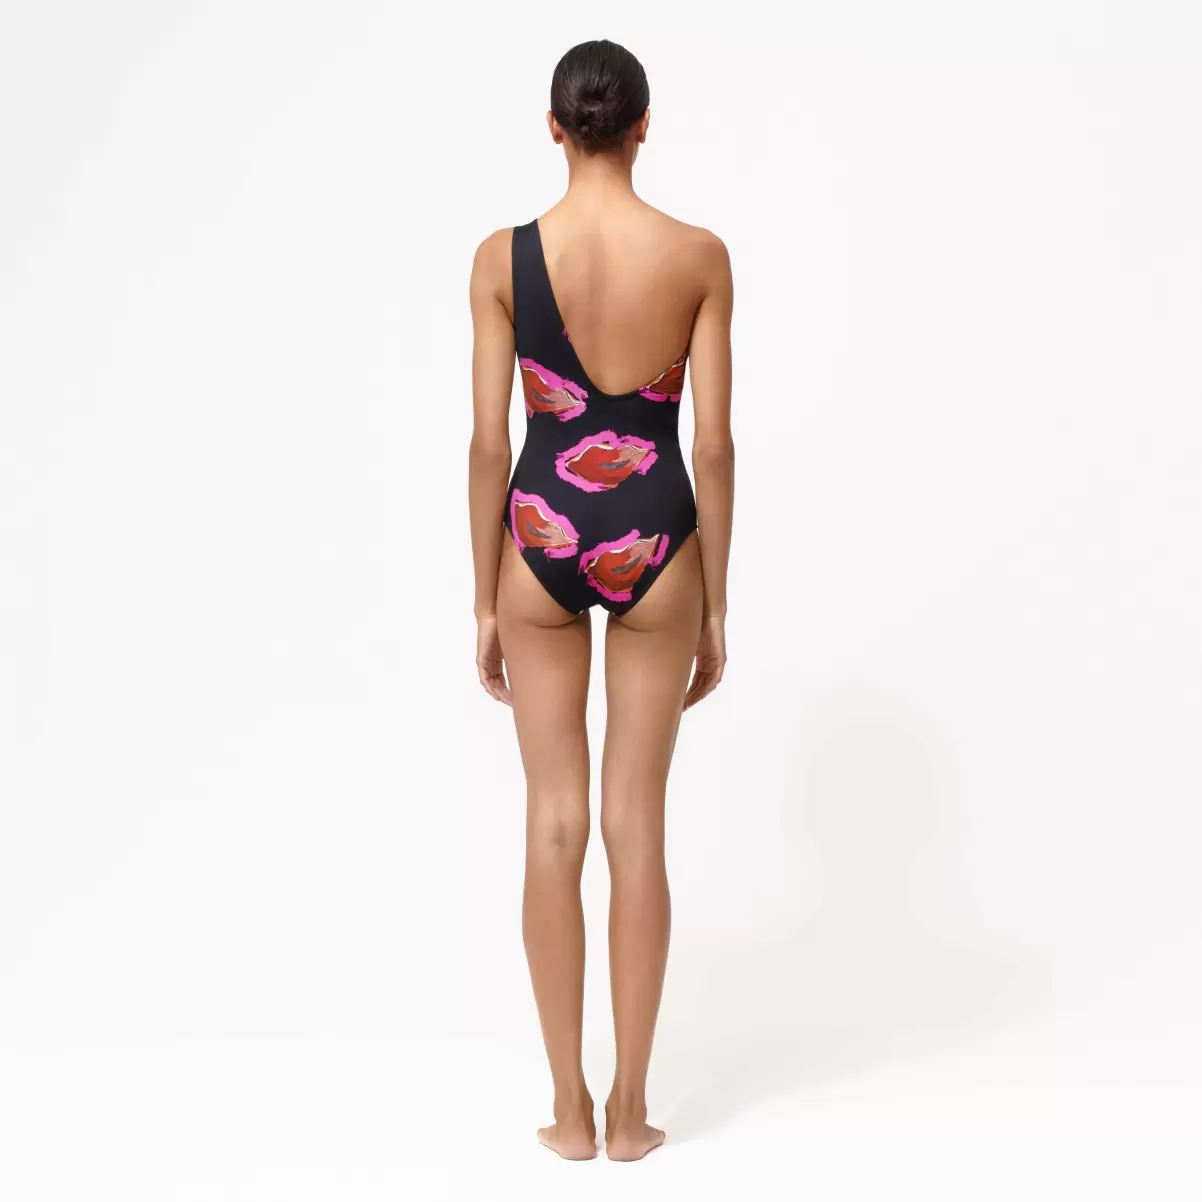 Treuerabatt Einteiler Passion Asymmetrischer Badeanzug Für Damen - Vilebrequin X Deux Femmes Noires Damen Schwarz / Schwarz - 1